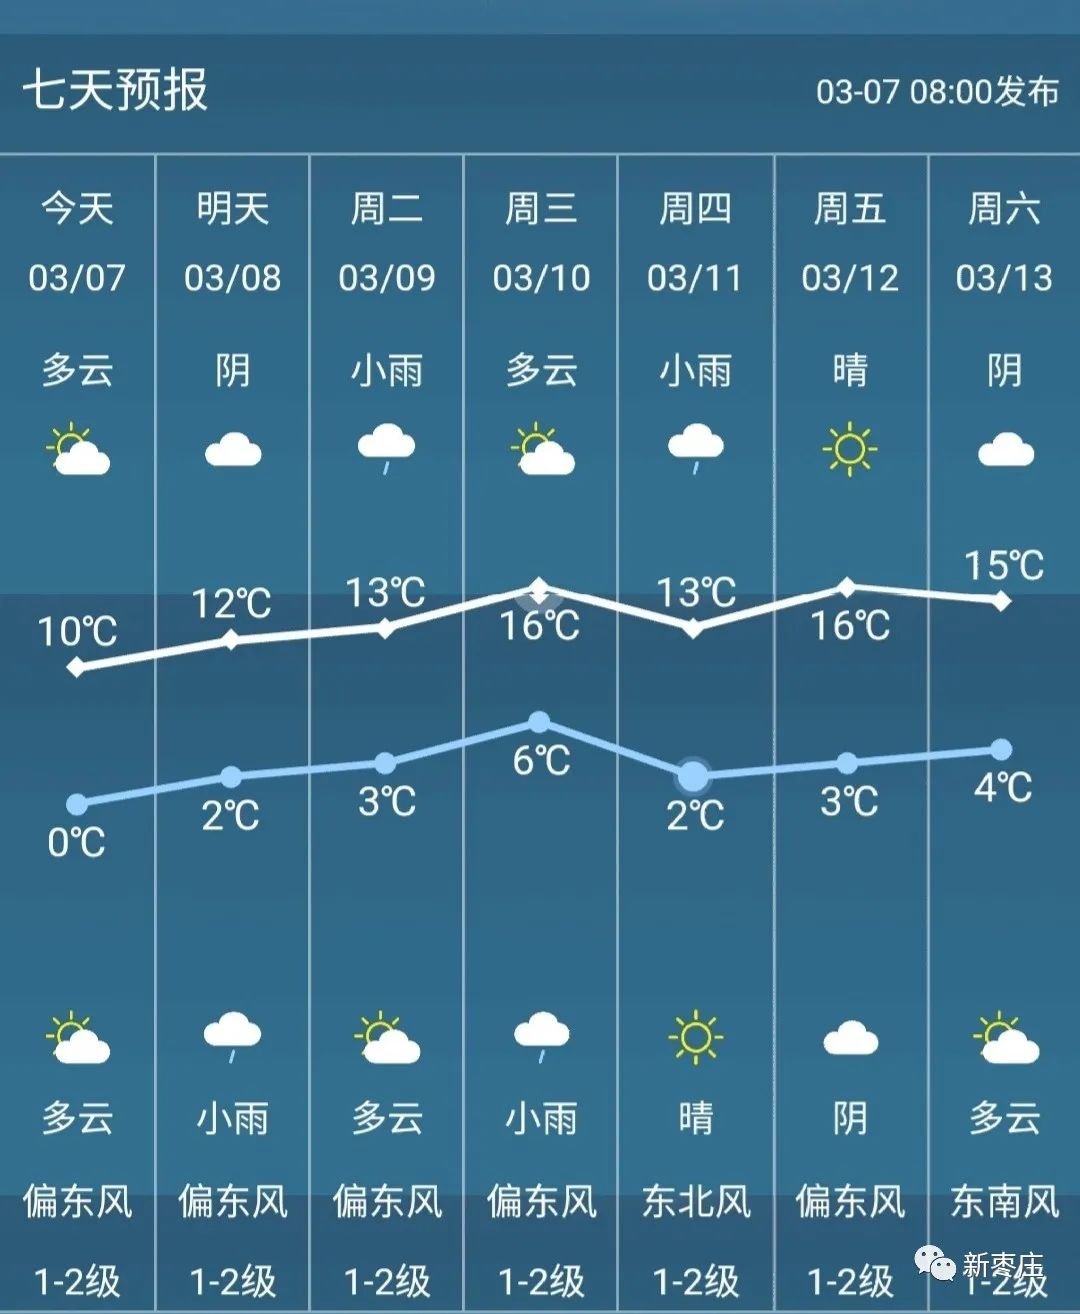 最新天气预报下周枣庄最高温16